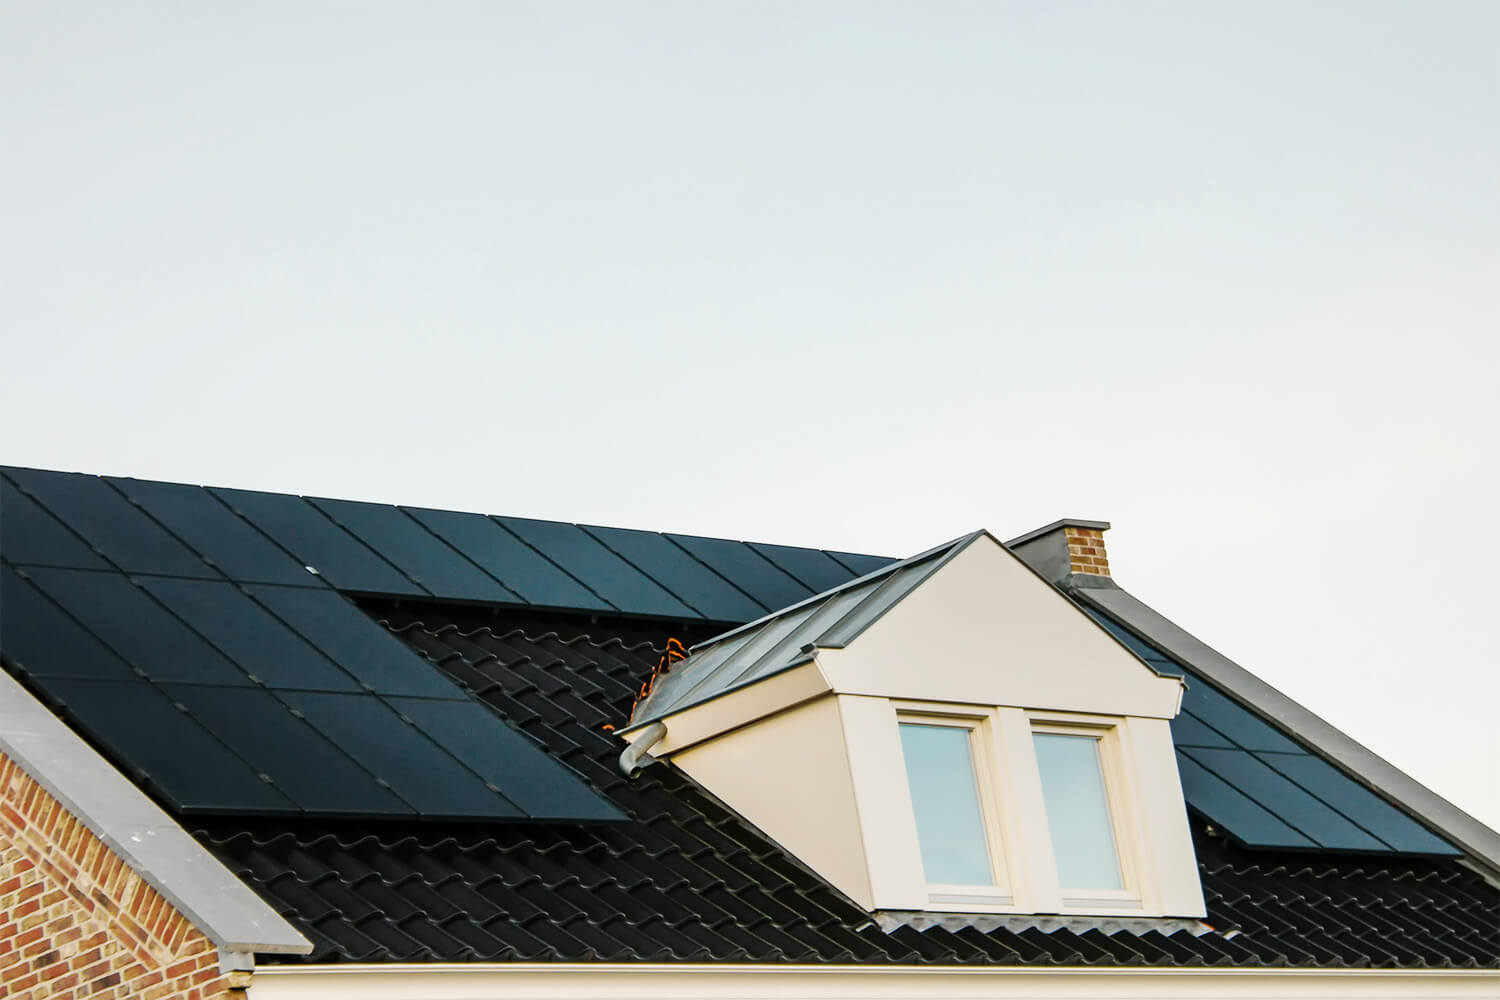 Installation solaire photovoltaique sur un toit incline